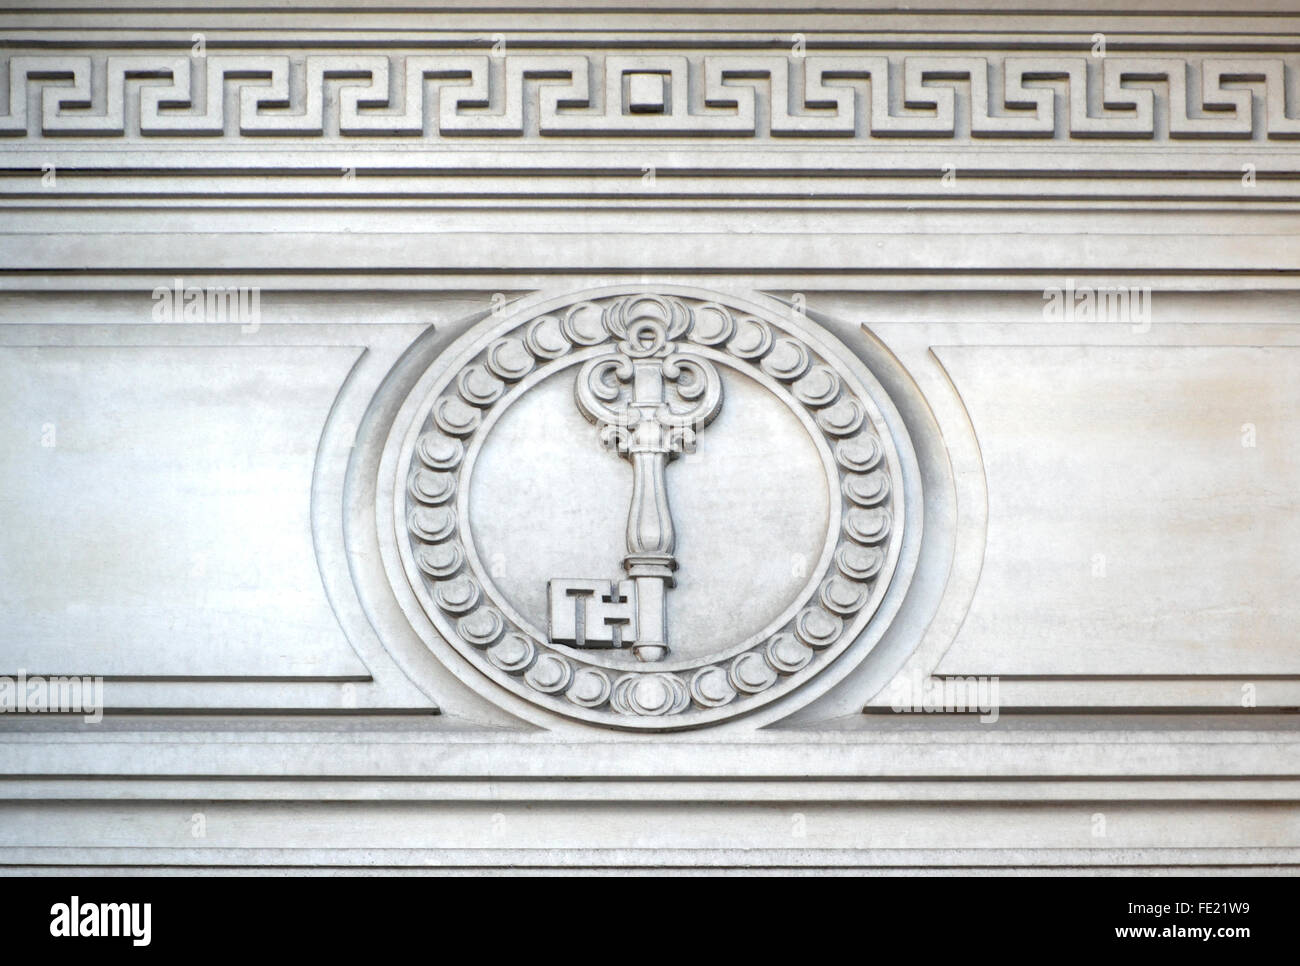 Londres, Angleterre, Royaume-Uni. Freemasons' Hall, Great Queen Street. Détail montrant la clé Banque D'Images